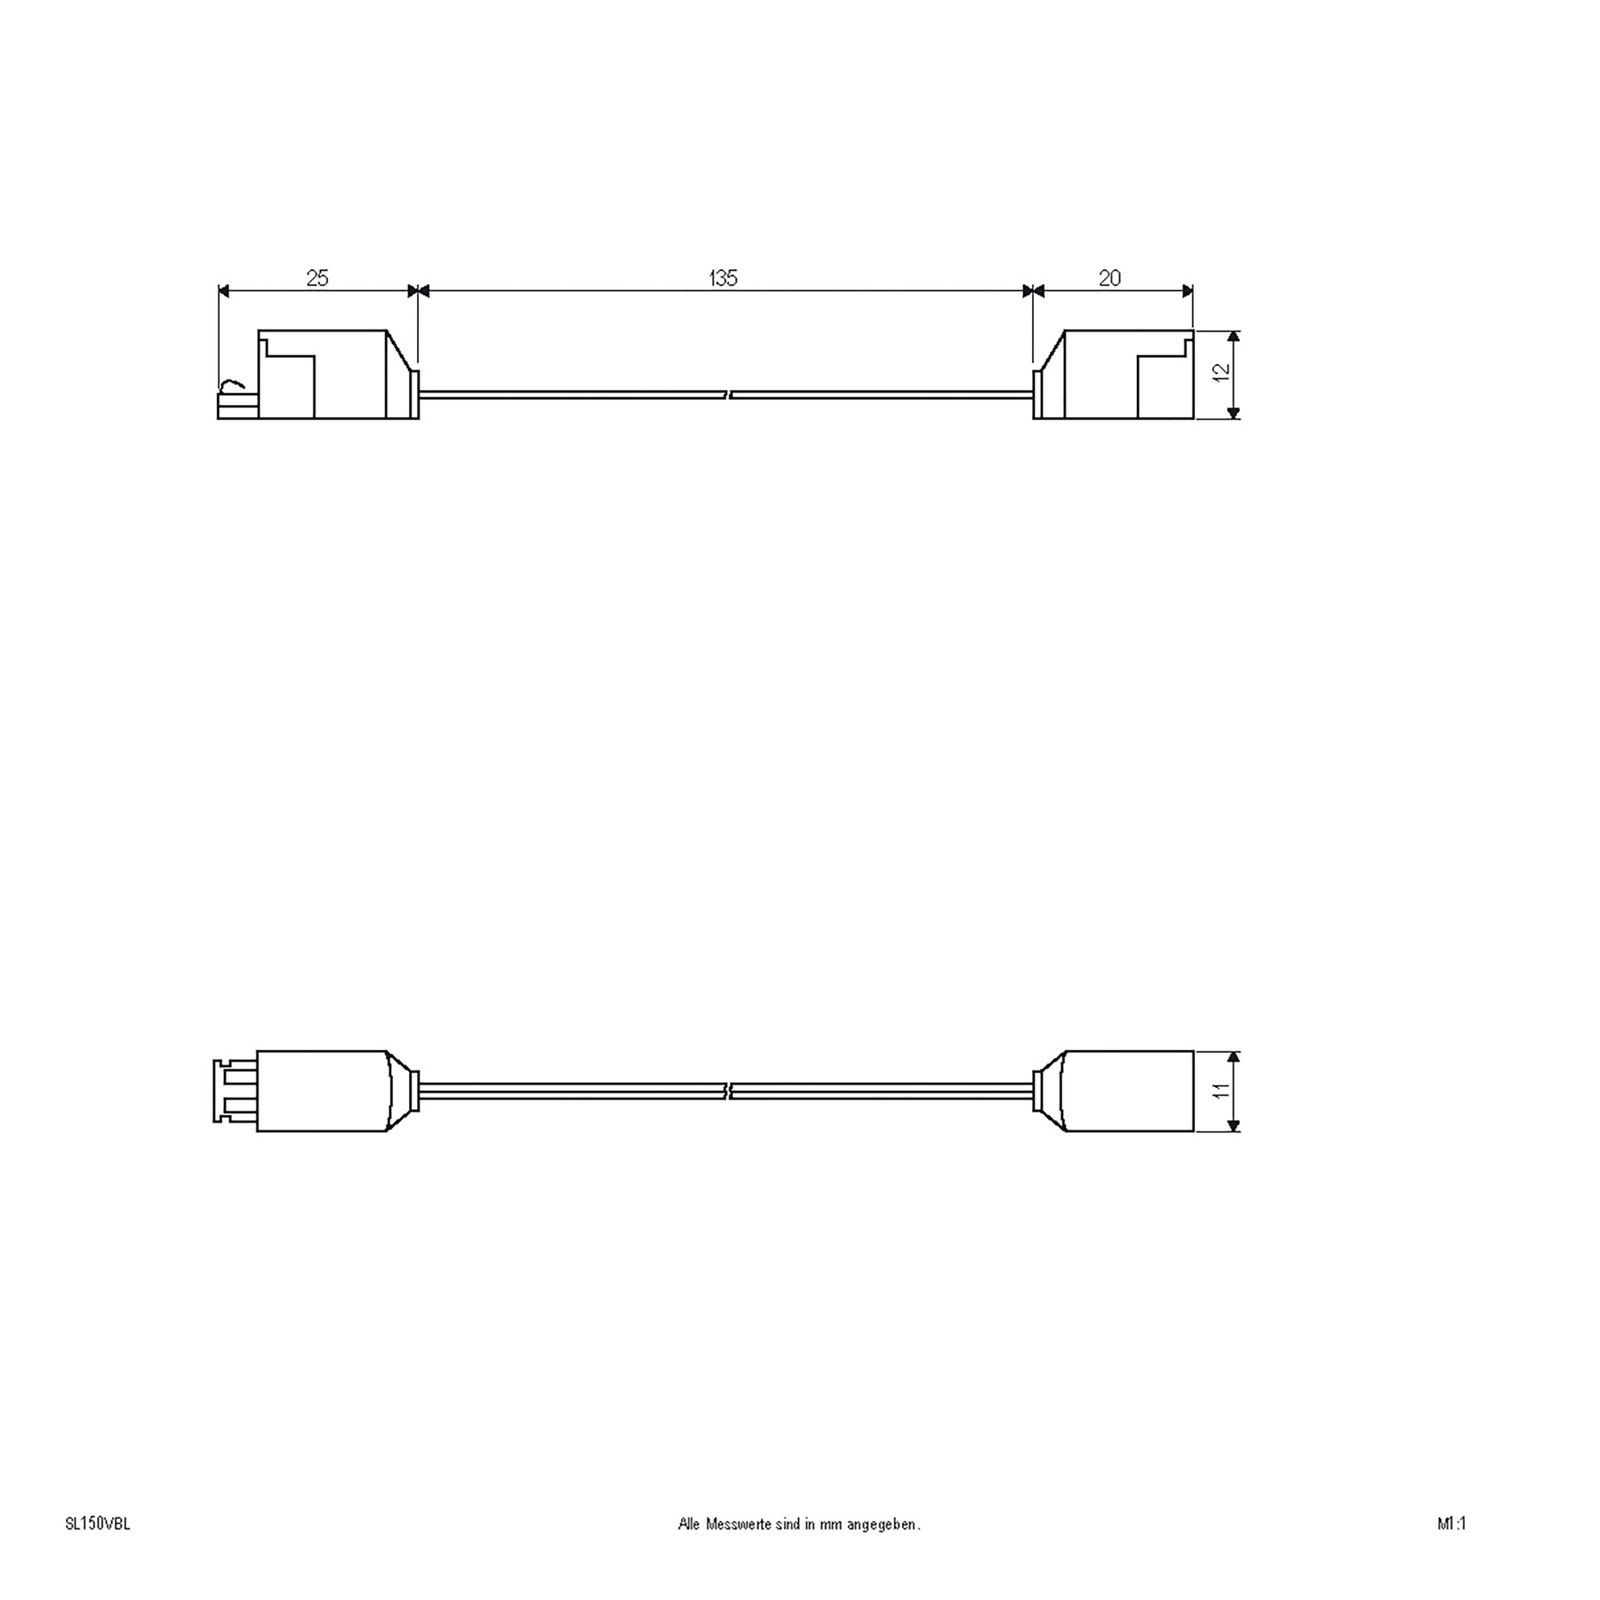 Câble de liaison pour série Bordo, longueur 15 cm